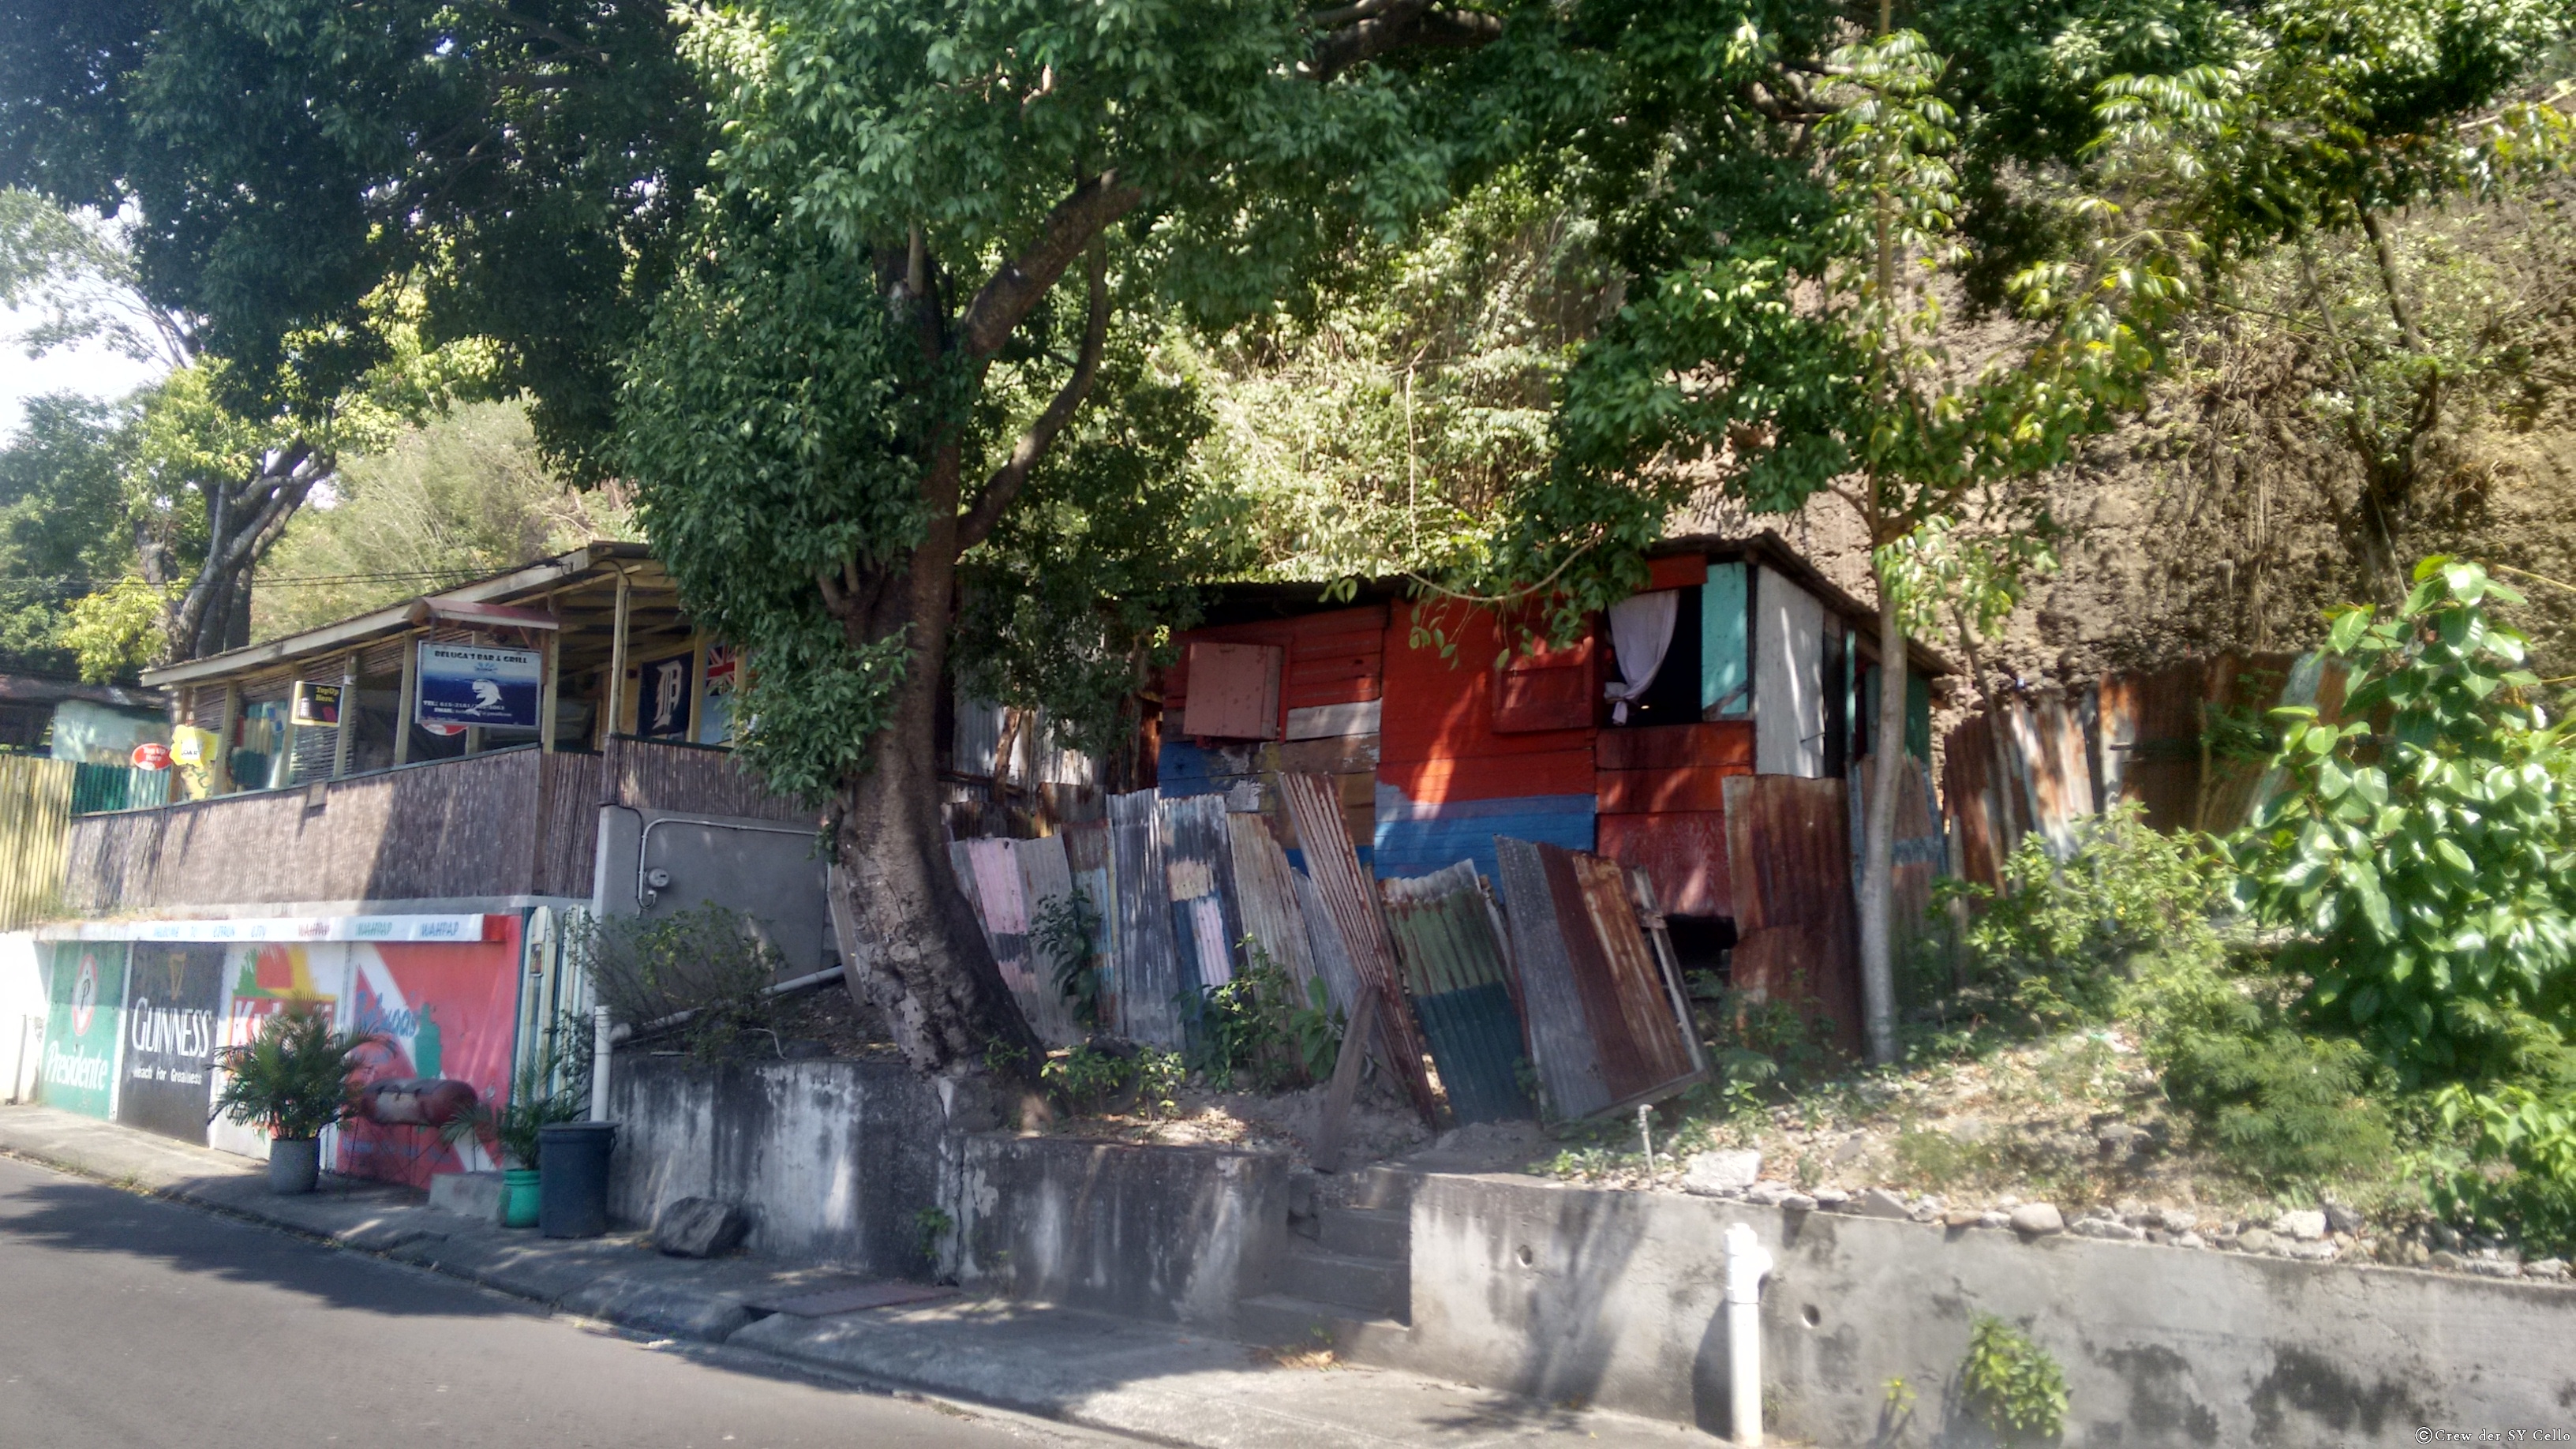 Meistens sieht man solche Häuser auf Dominica, oder in noch schlechterem Zustand.